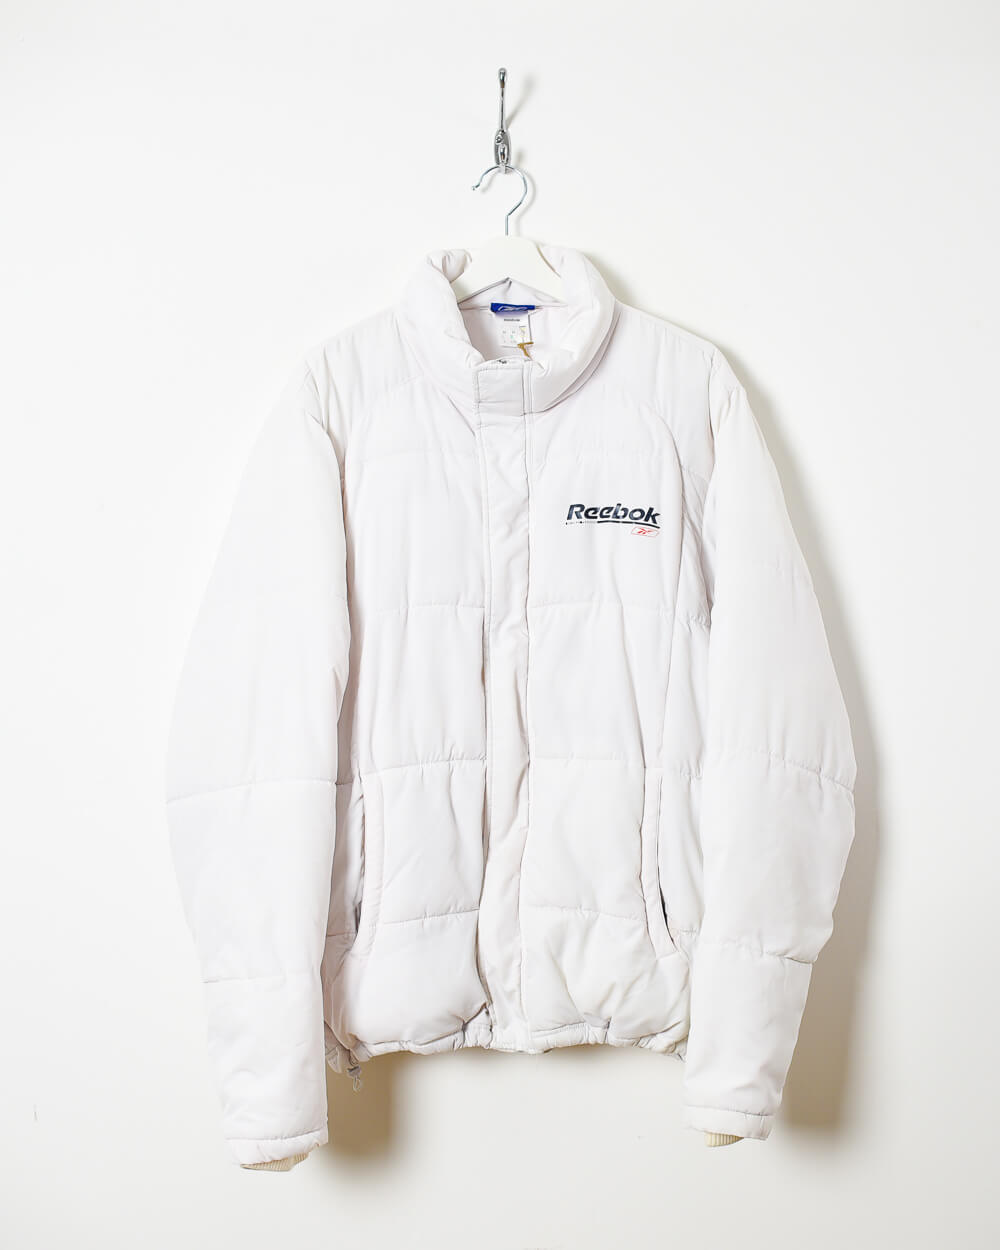 White Reebok Puffer Jacket - Medium